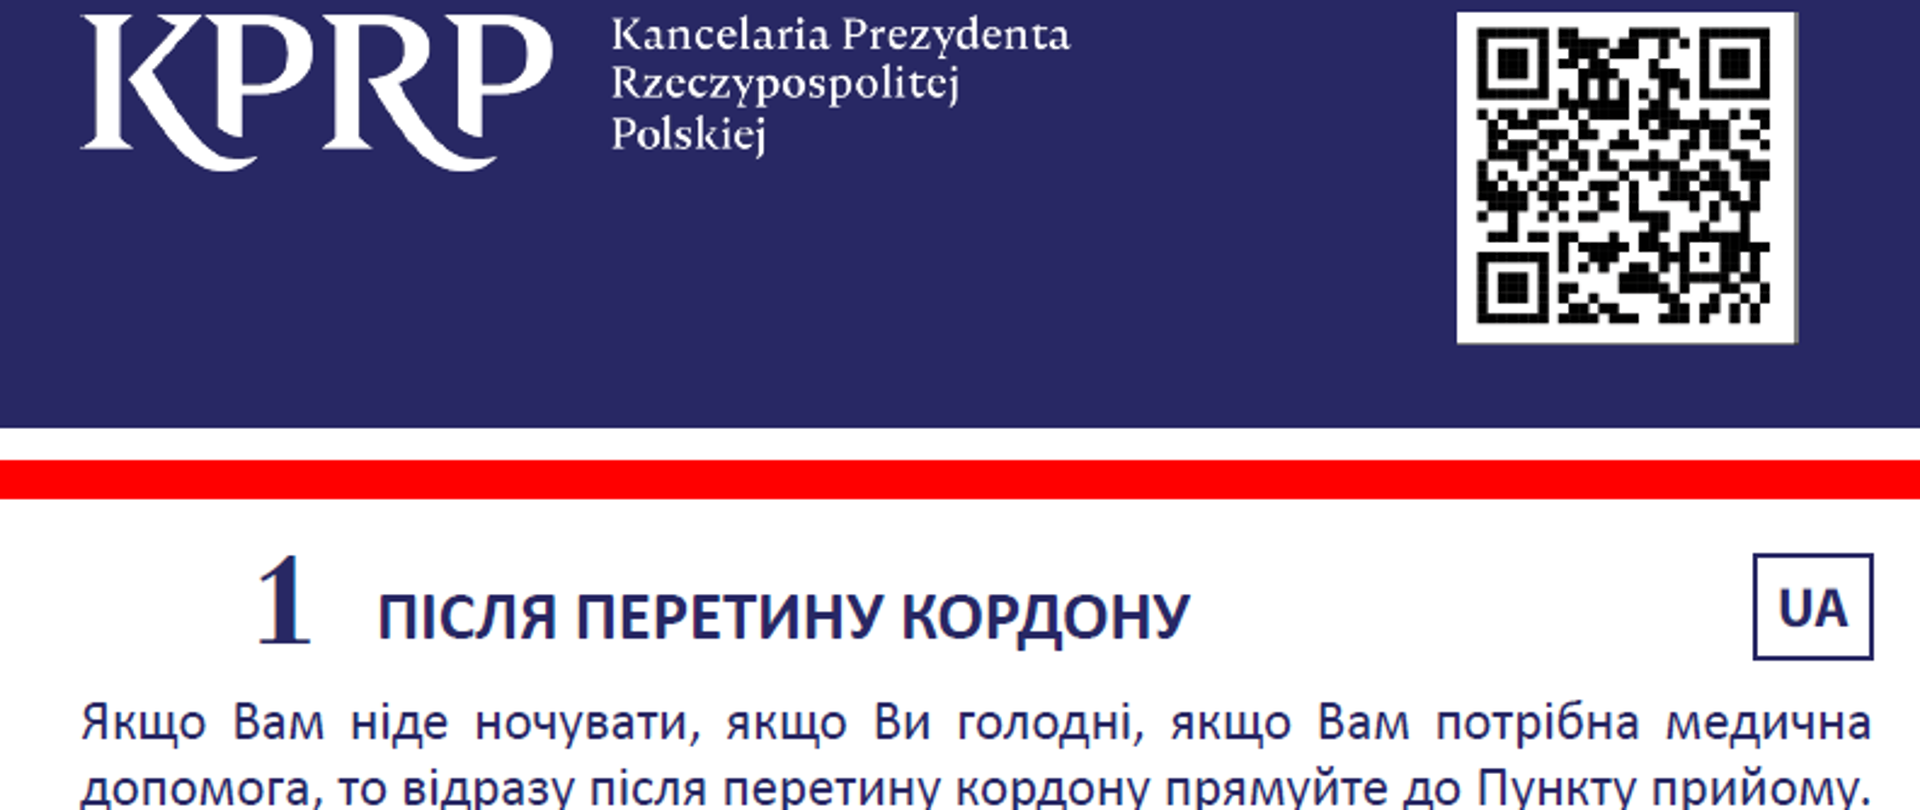 Przygotowana przez Kancelarię Prezydenta Rzeczypospolitej Polskiej informacja dla uchodźców z Ukrainy